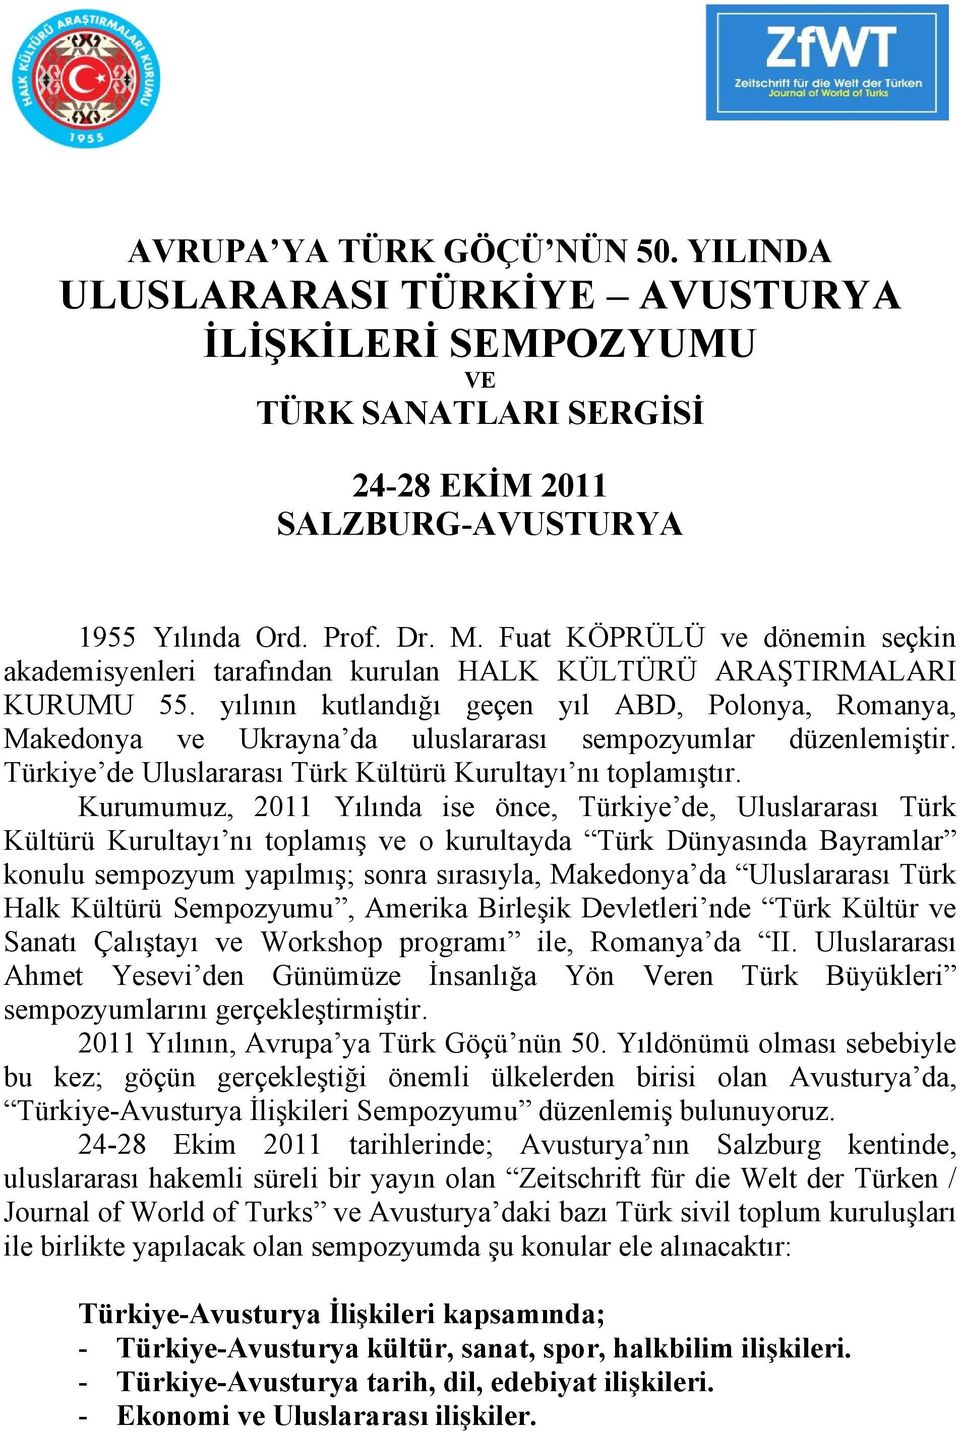 yılının kutlandığı geçen yıl ABD, Polonya, Romanya, Makedonya ve Ukrayna da uluslararası sempozyumlar düzenlemiştir. Türkiye de Uluslararası Türk Kültürü Kurultayı nı toplamıştır.